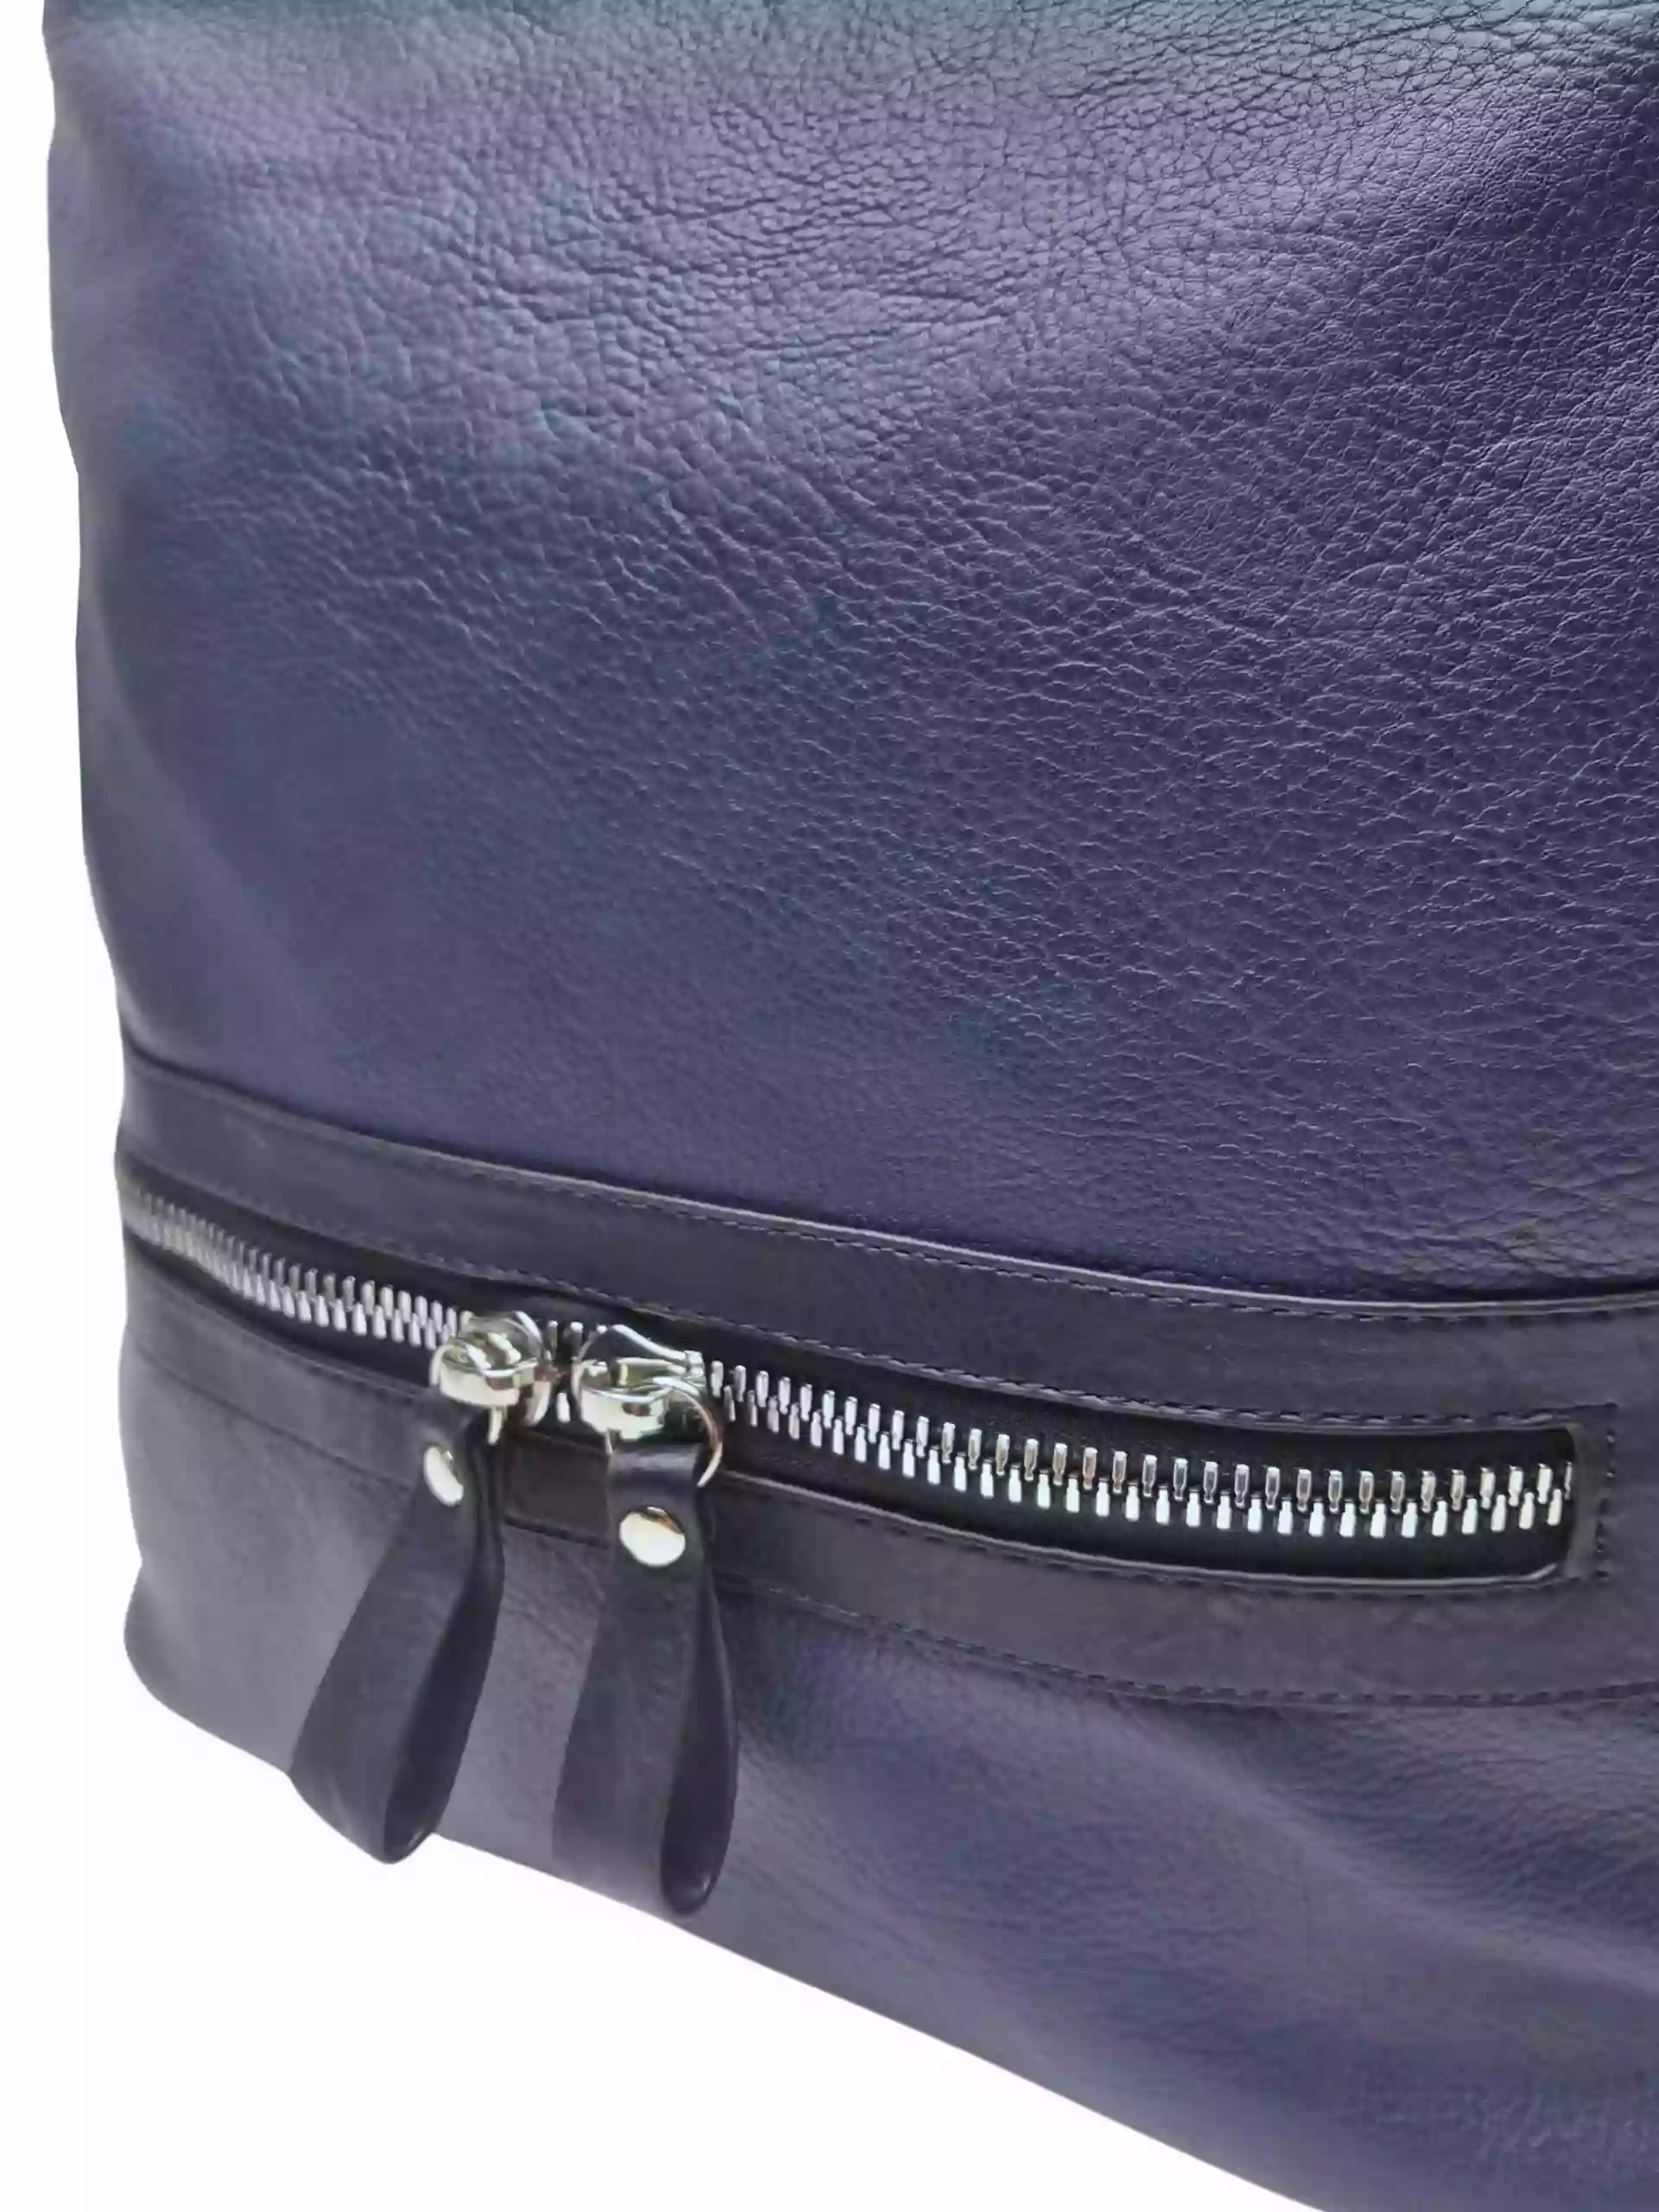 Velký středně modrý kabelko-batoh 2v1 z eko kůže, Tapple, H20805, detail kabelko-batohu 2v1